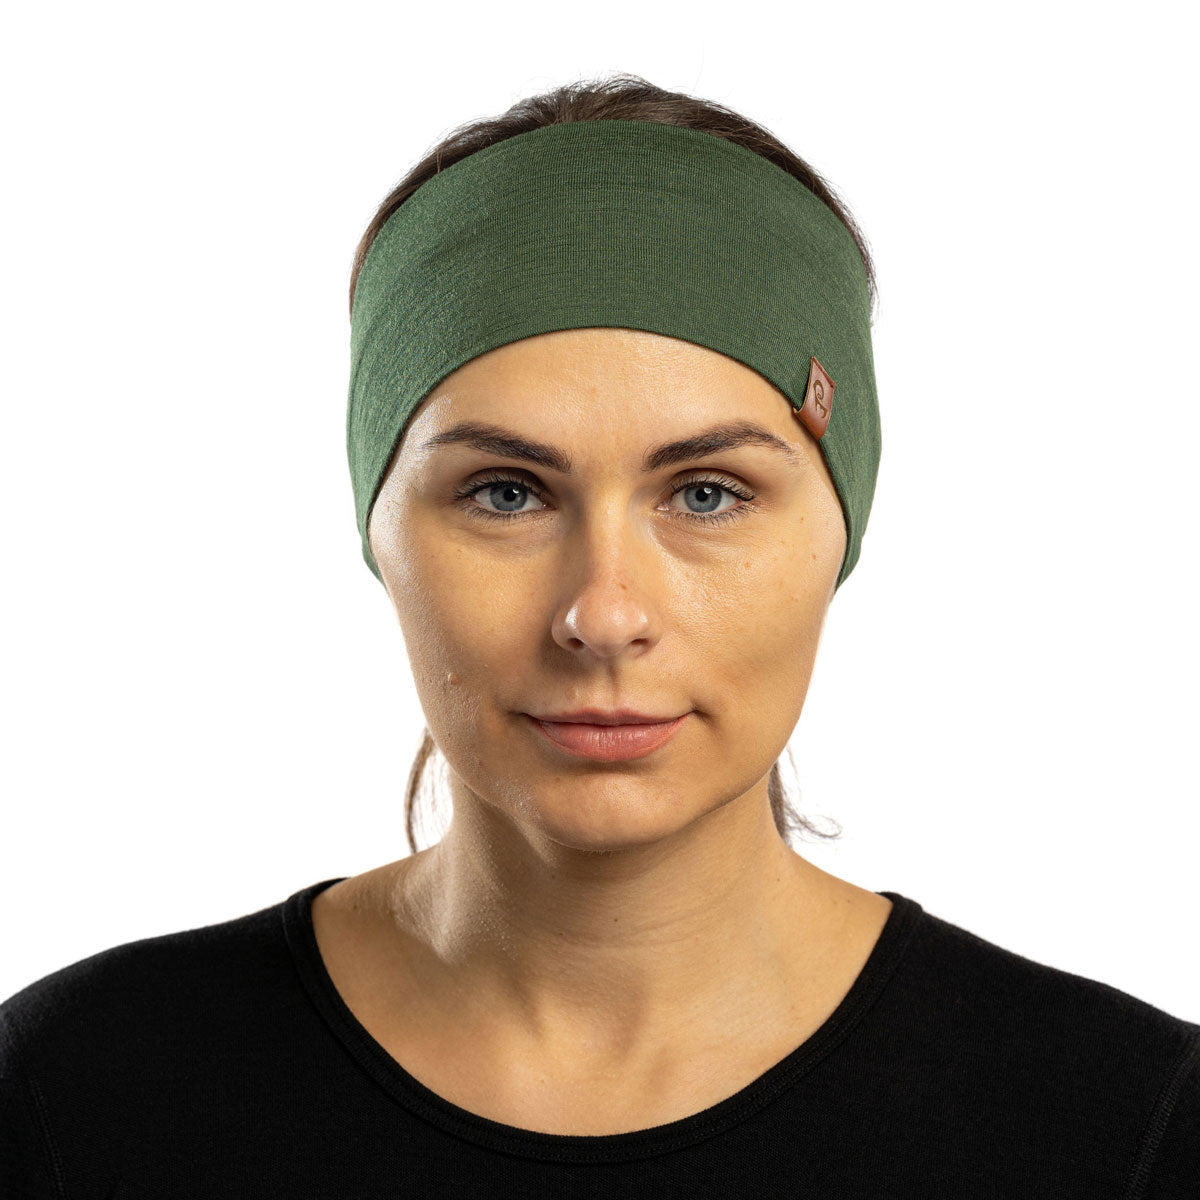 MENIQUE 100% Merino Wool Womens Headband Dark Green